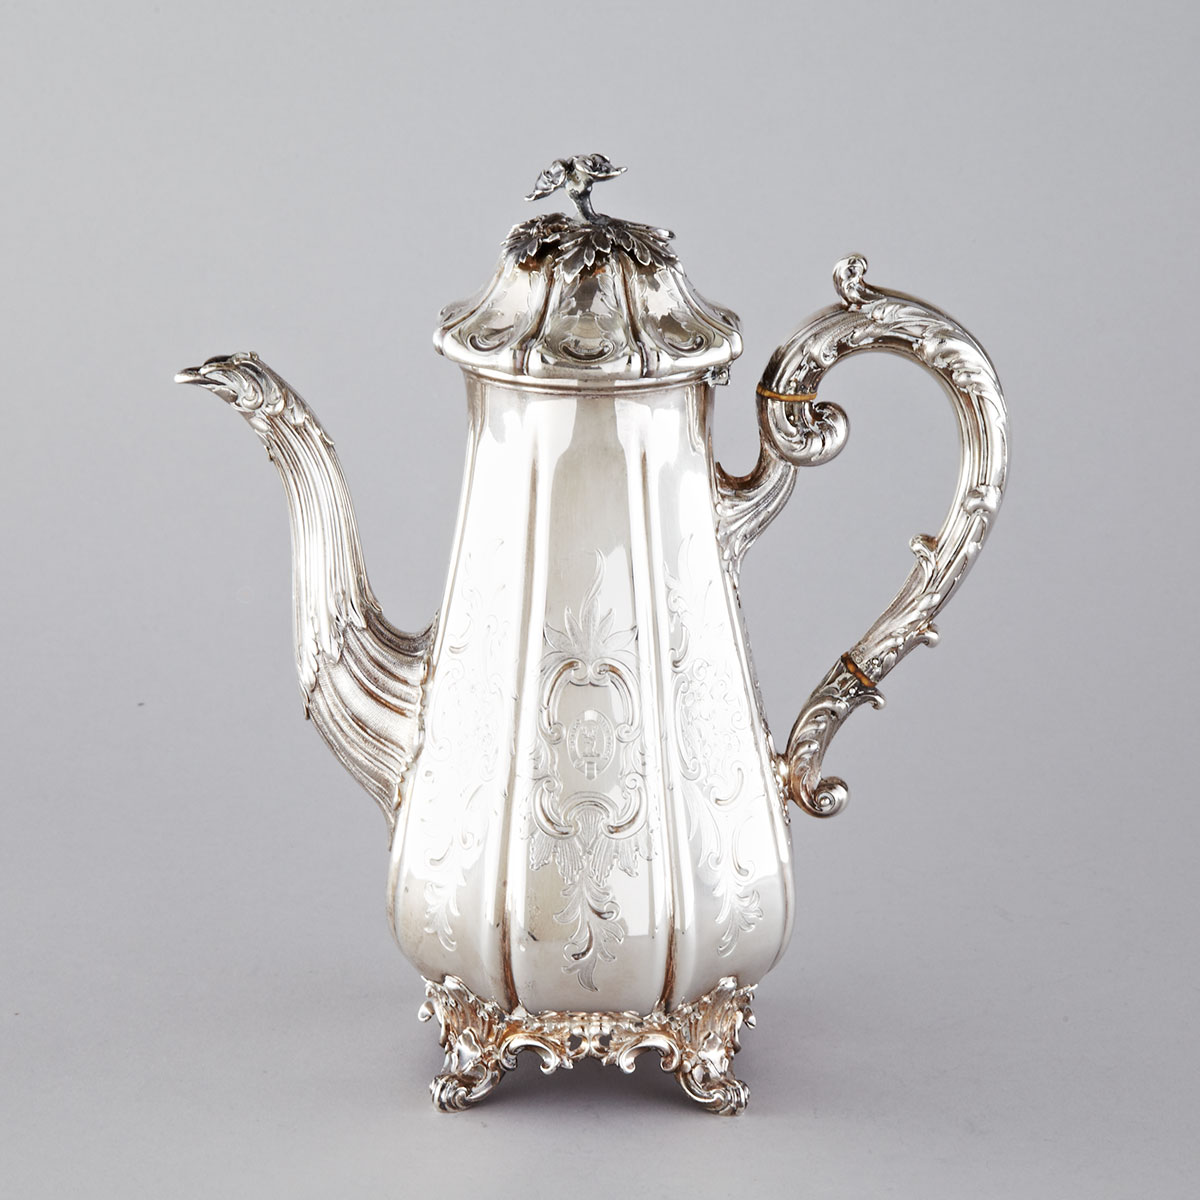 Victorian Silver Coffee Pot, Edward, Edward, John & William Barnard, London, 1839